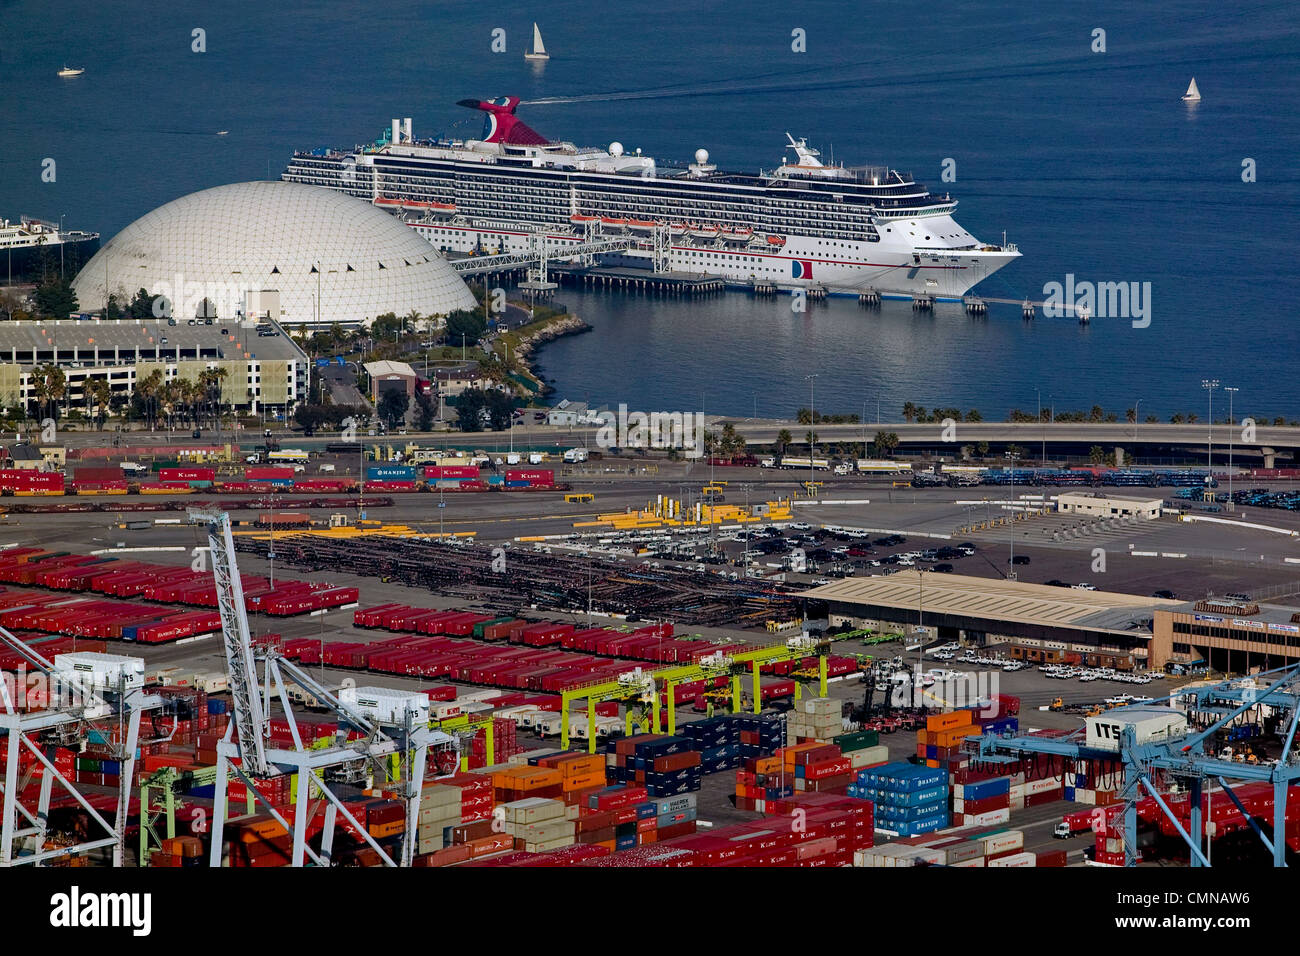 Photographie aérienne Long Beach Cruise Terminal Port de Long Beach, Californie Banque D'Images